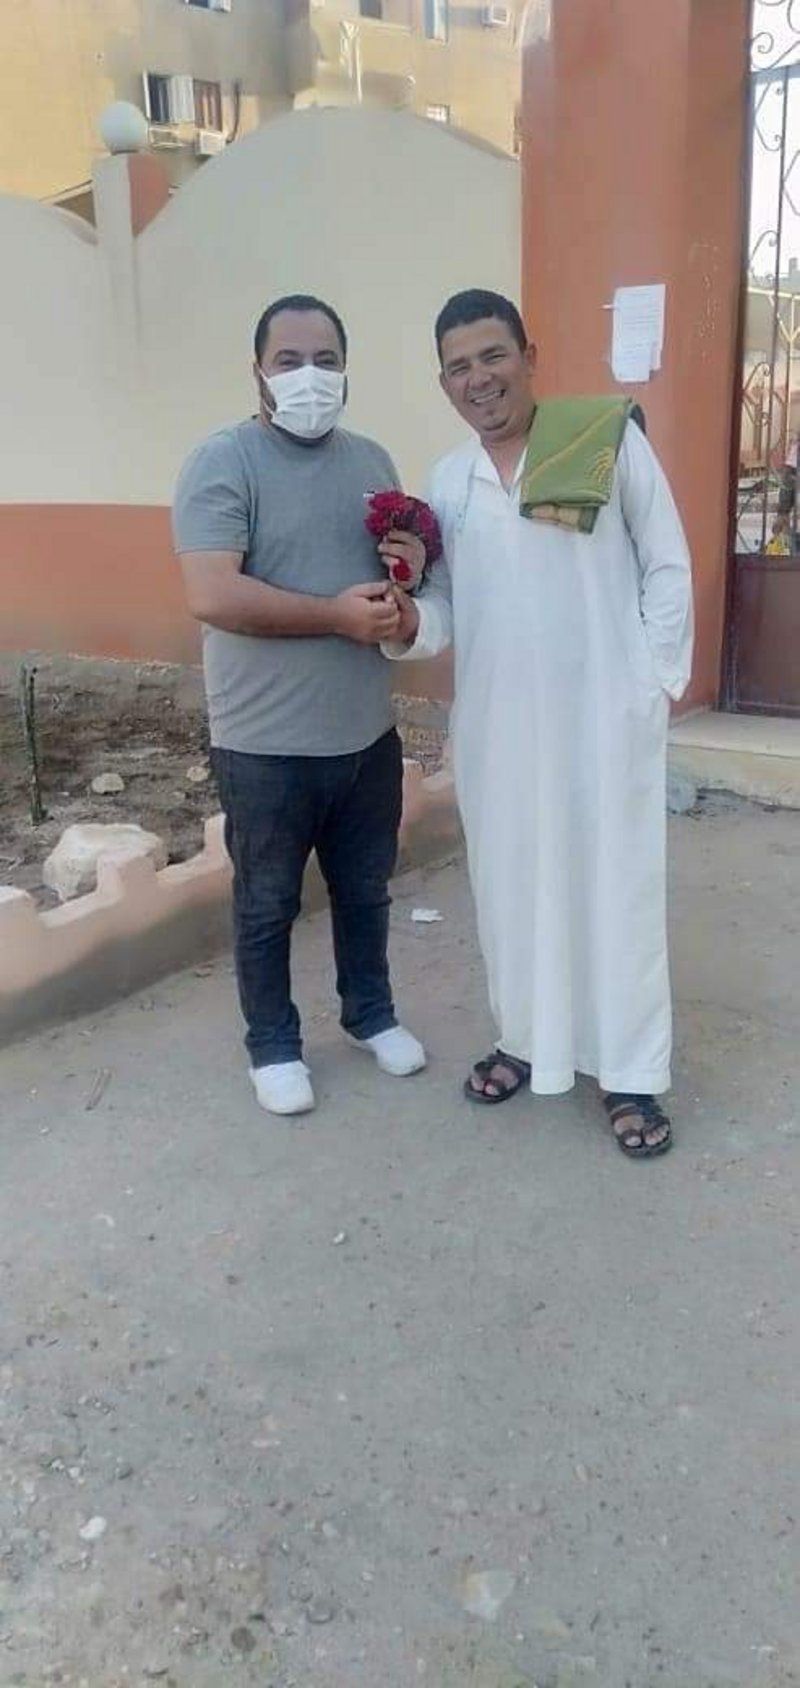 شاهد من مصر.. مسيحي يقف أمام المسجد ليوزع الورود على المصلين